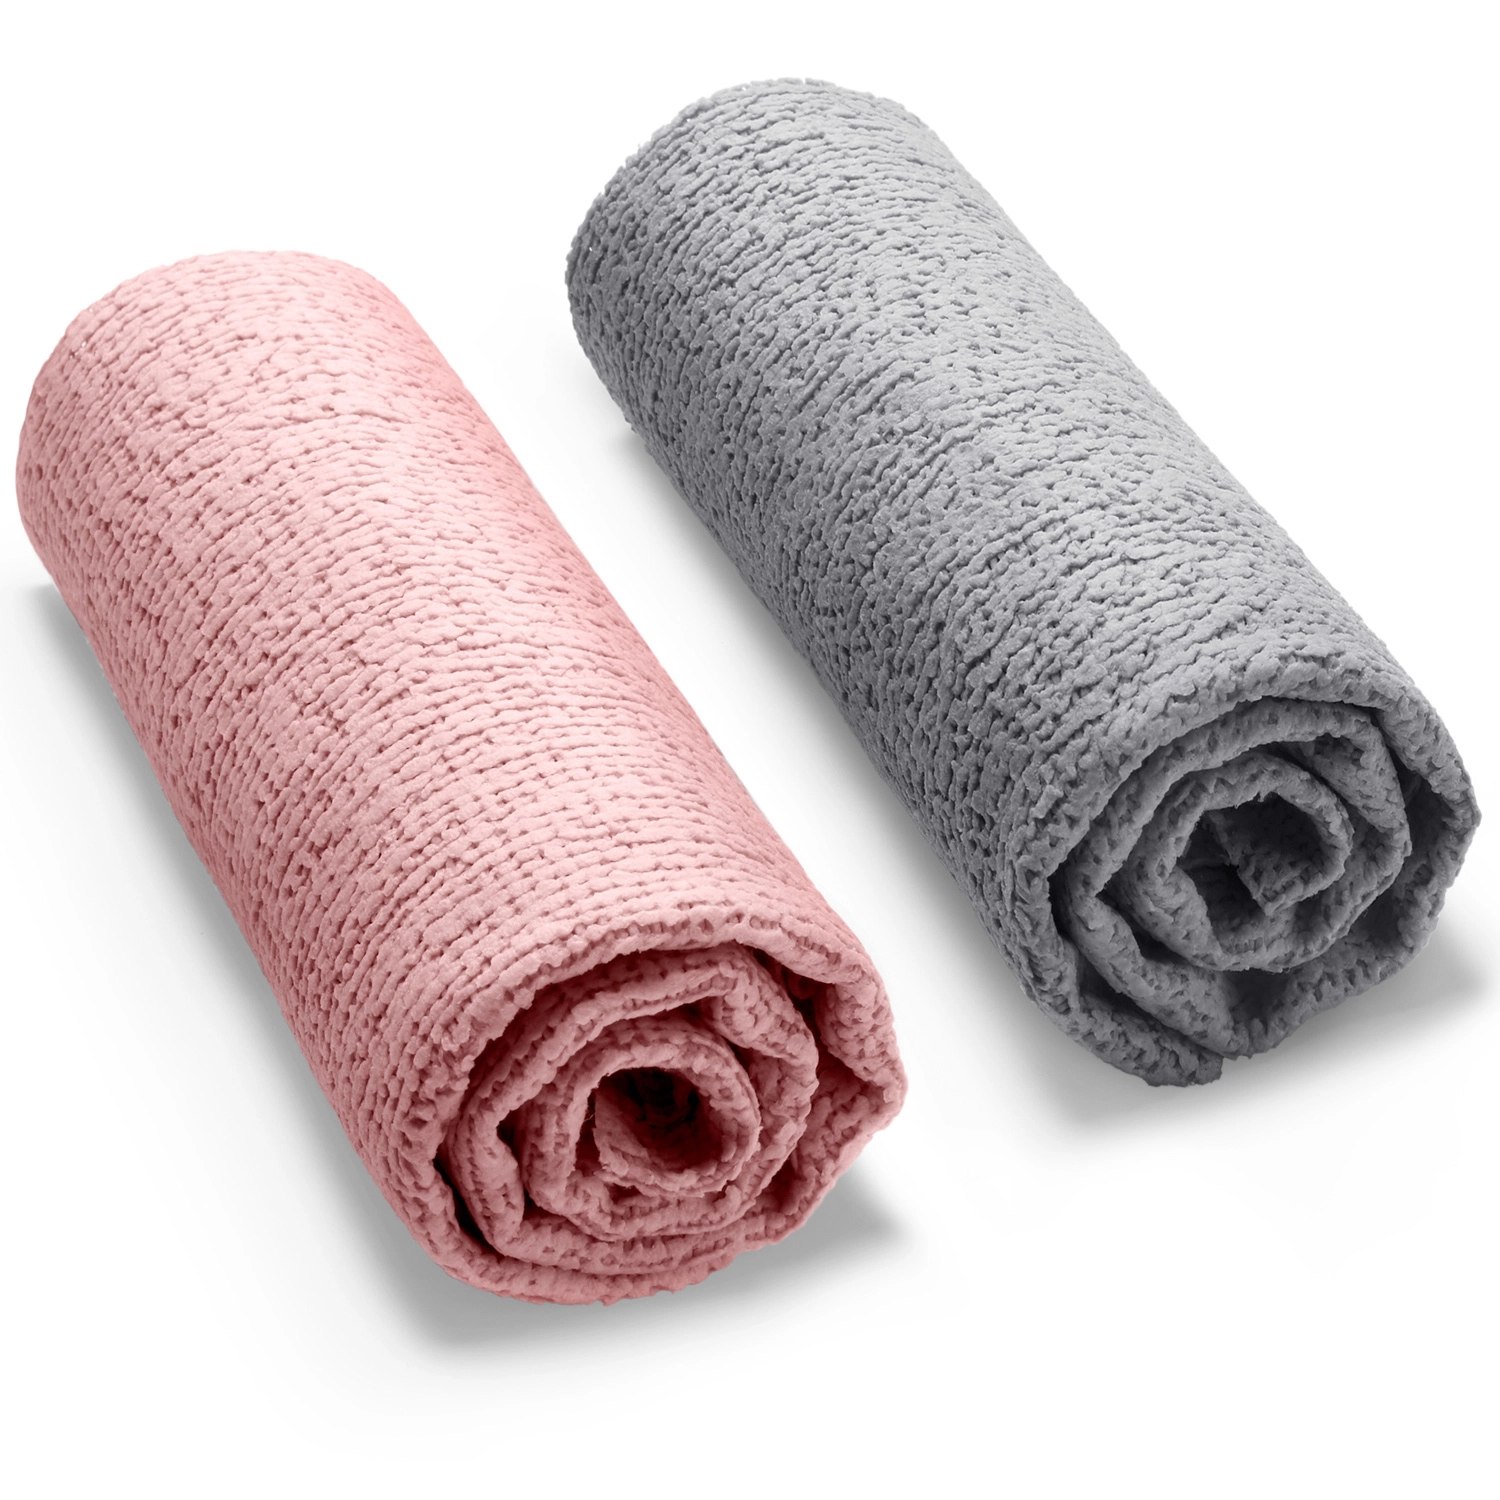 Panni Vileda Actifibre Soft in microfibra rosa e grigio 2pz